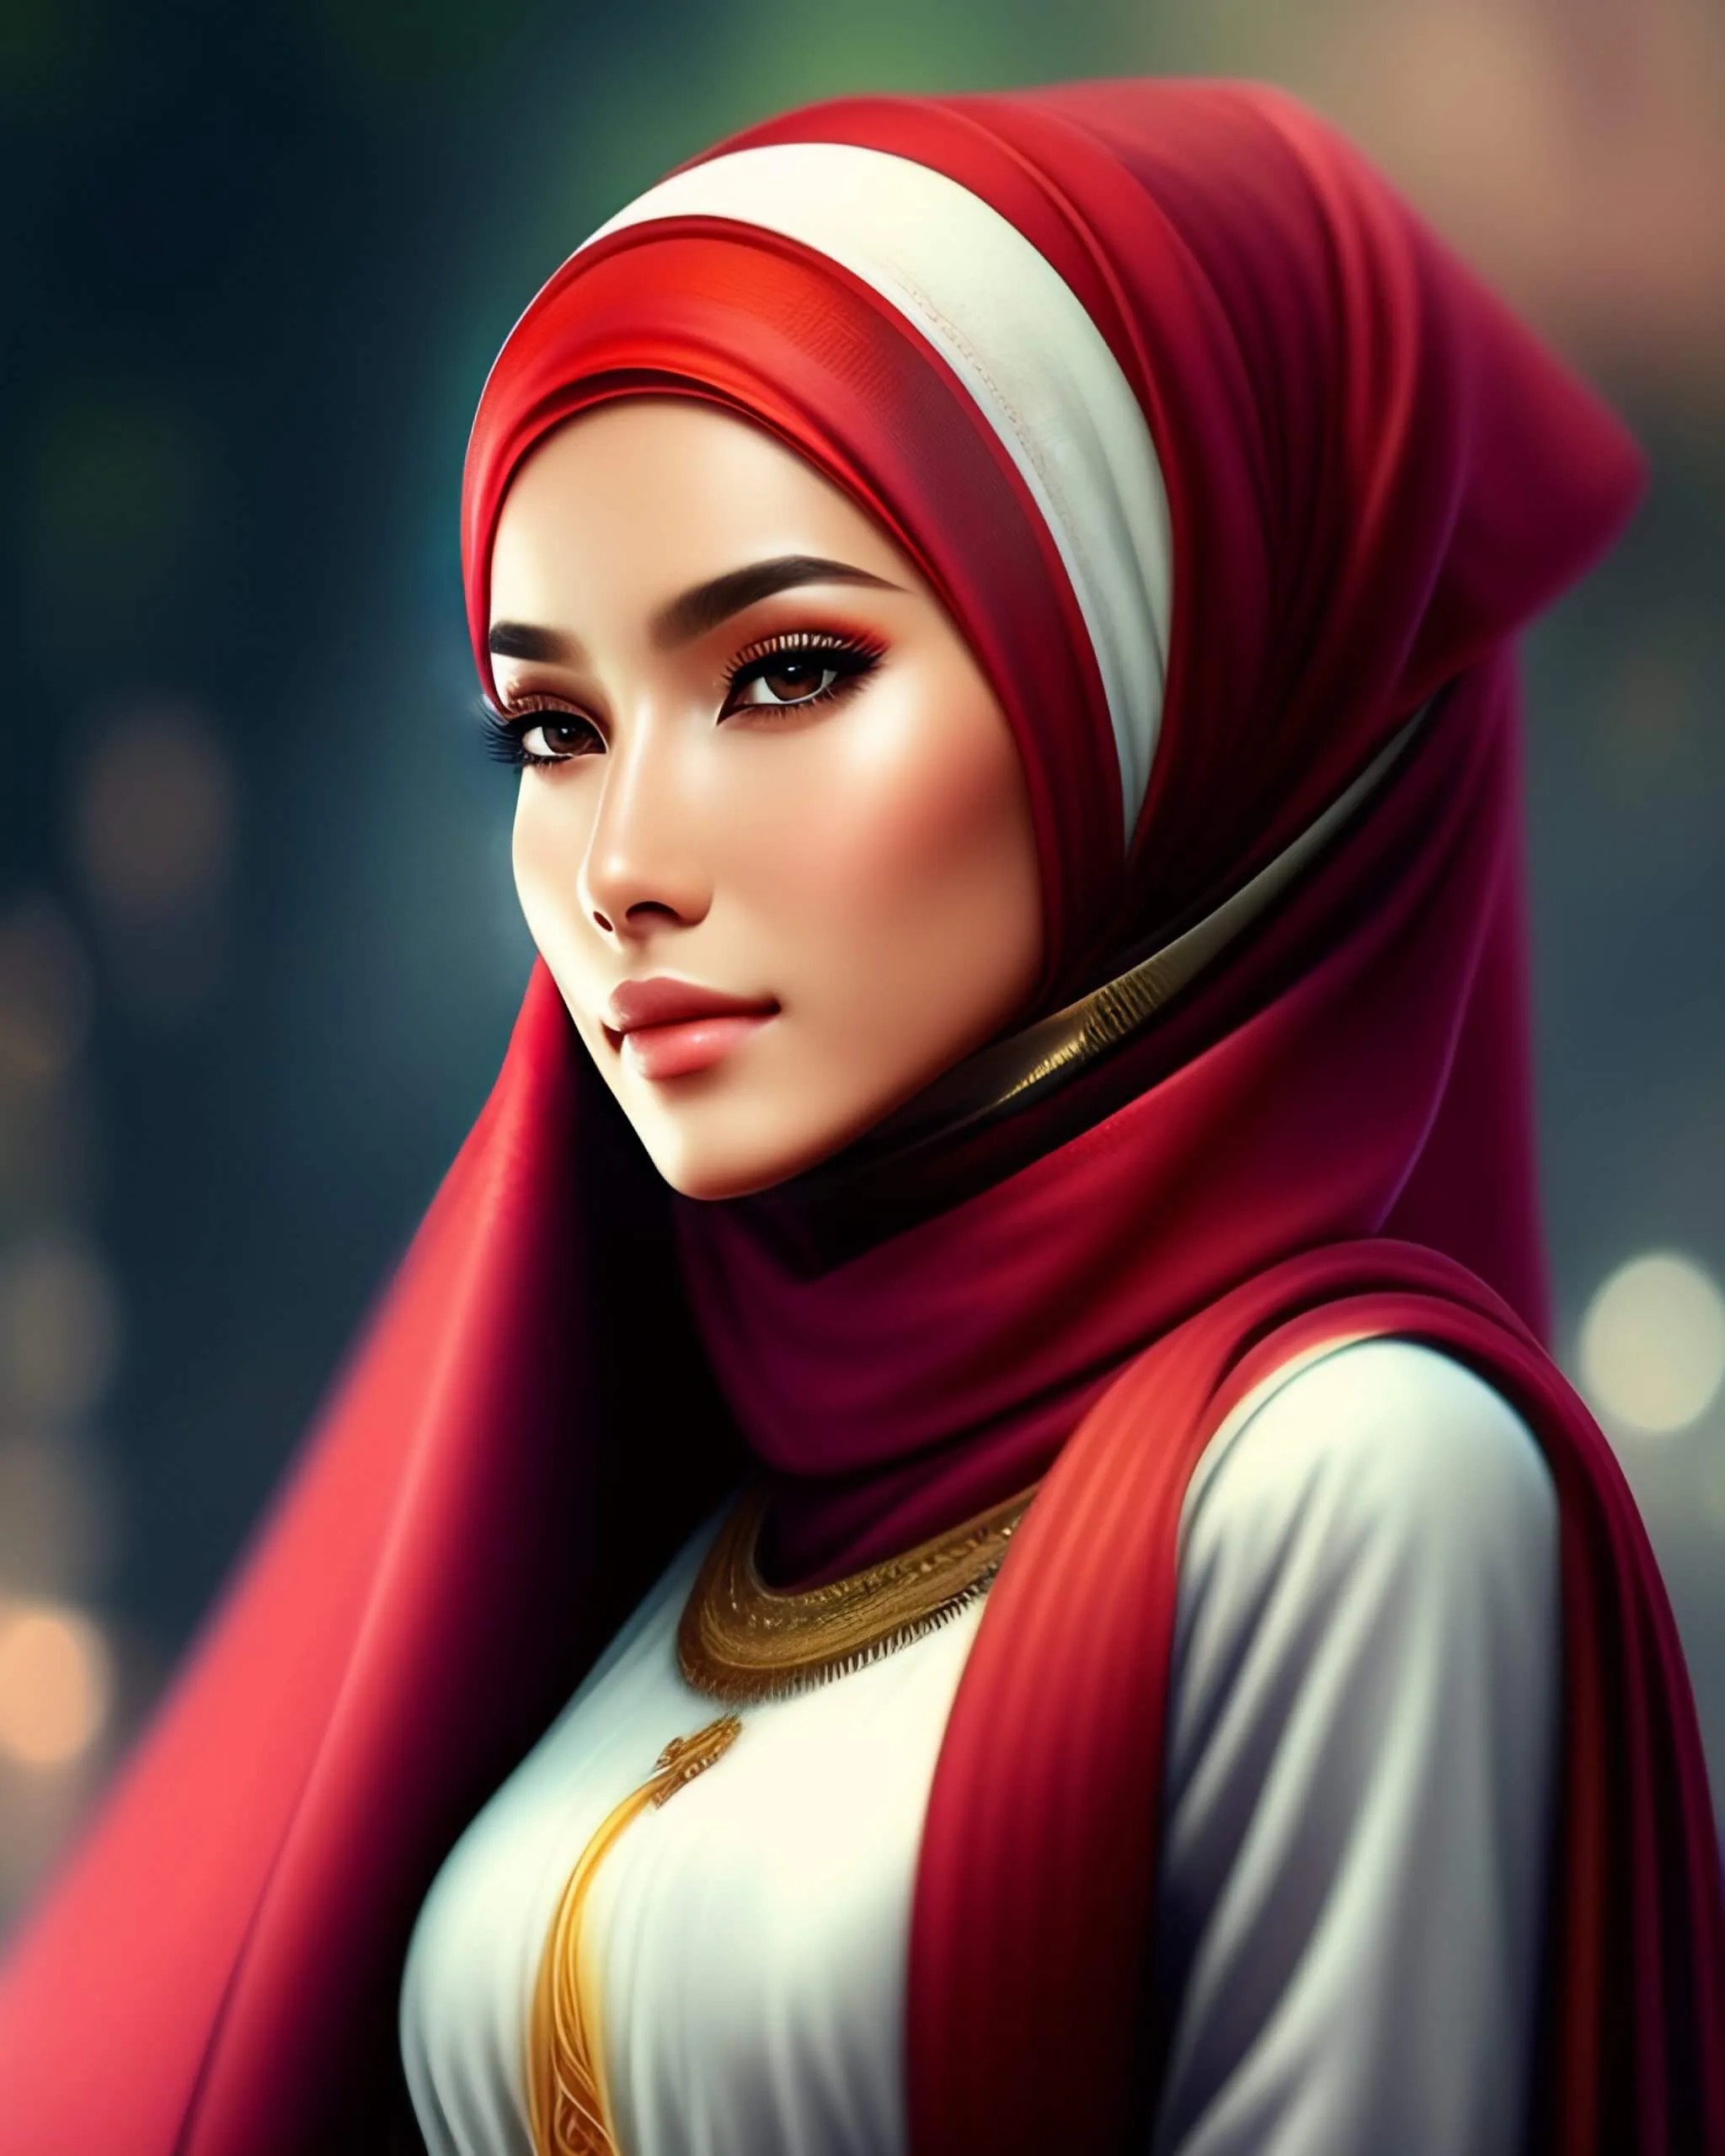 Cute hijab girl